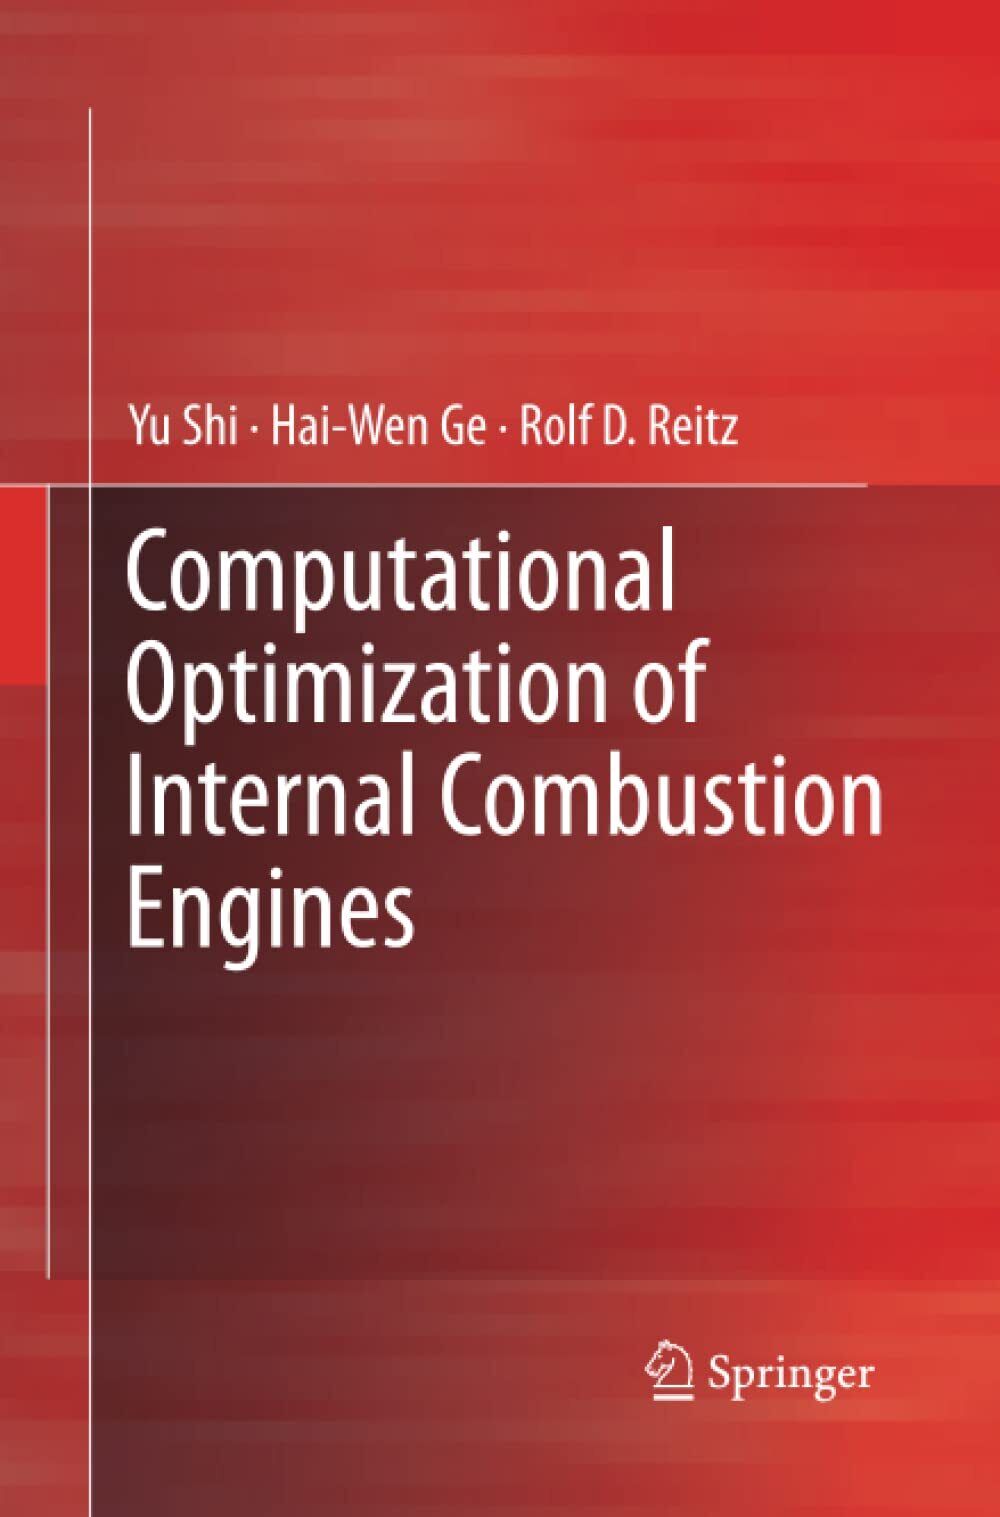 Computational Optimization of Internal Combustion Engines - Springer, 2016